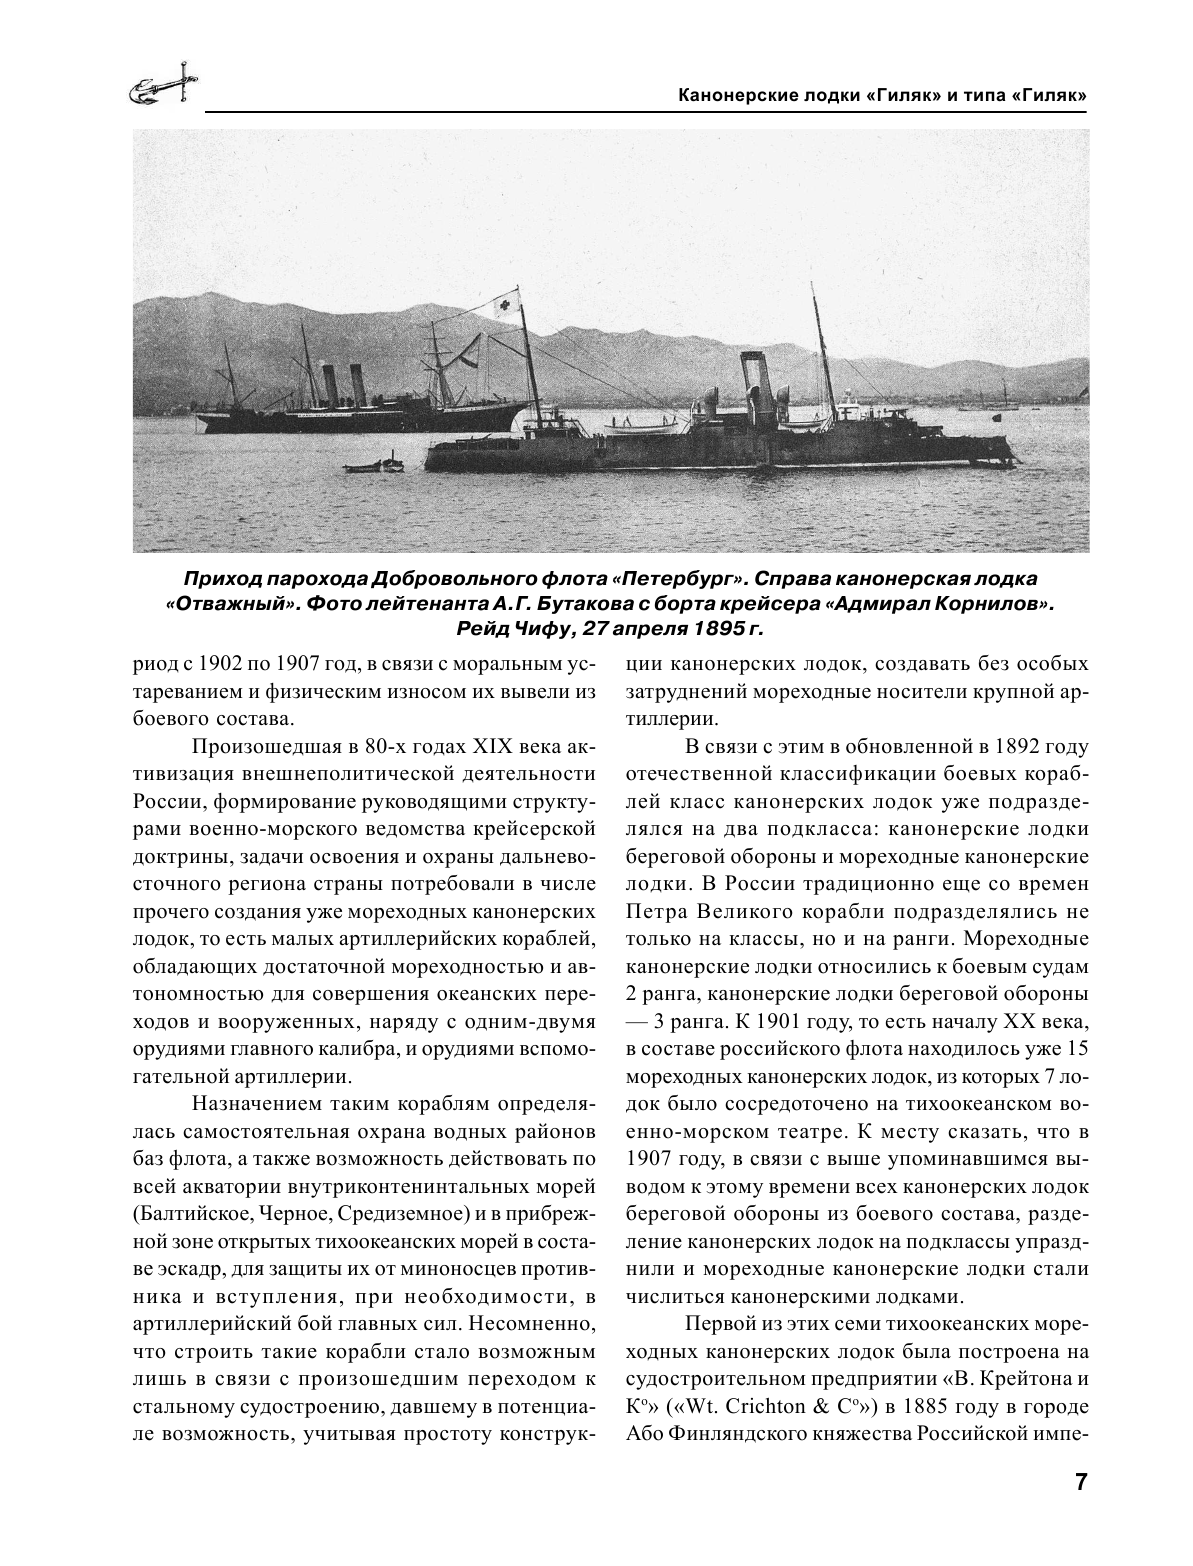 Канонерские лодки типа «Гиляк». От Китая и Порт-Артура до Первой мировой - фото №8